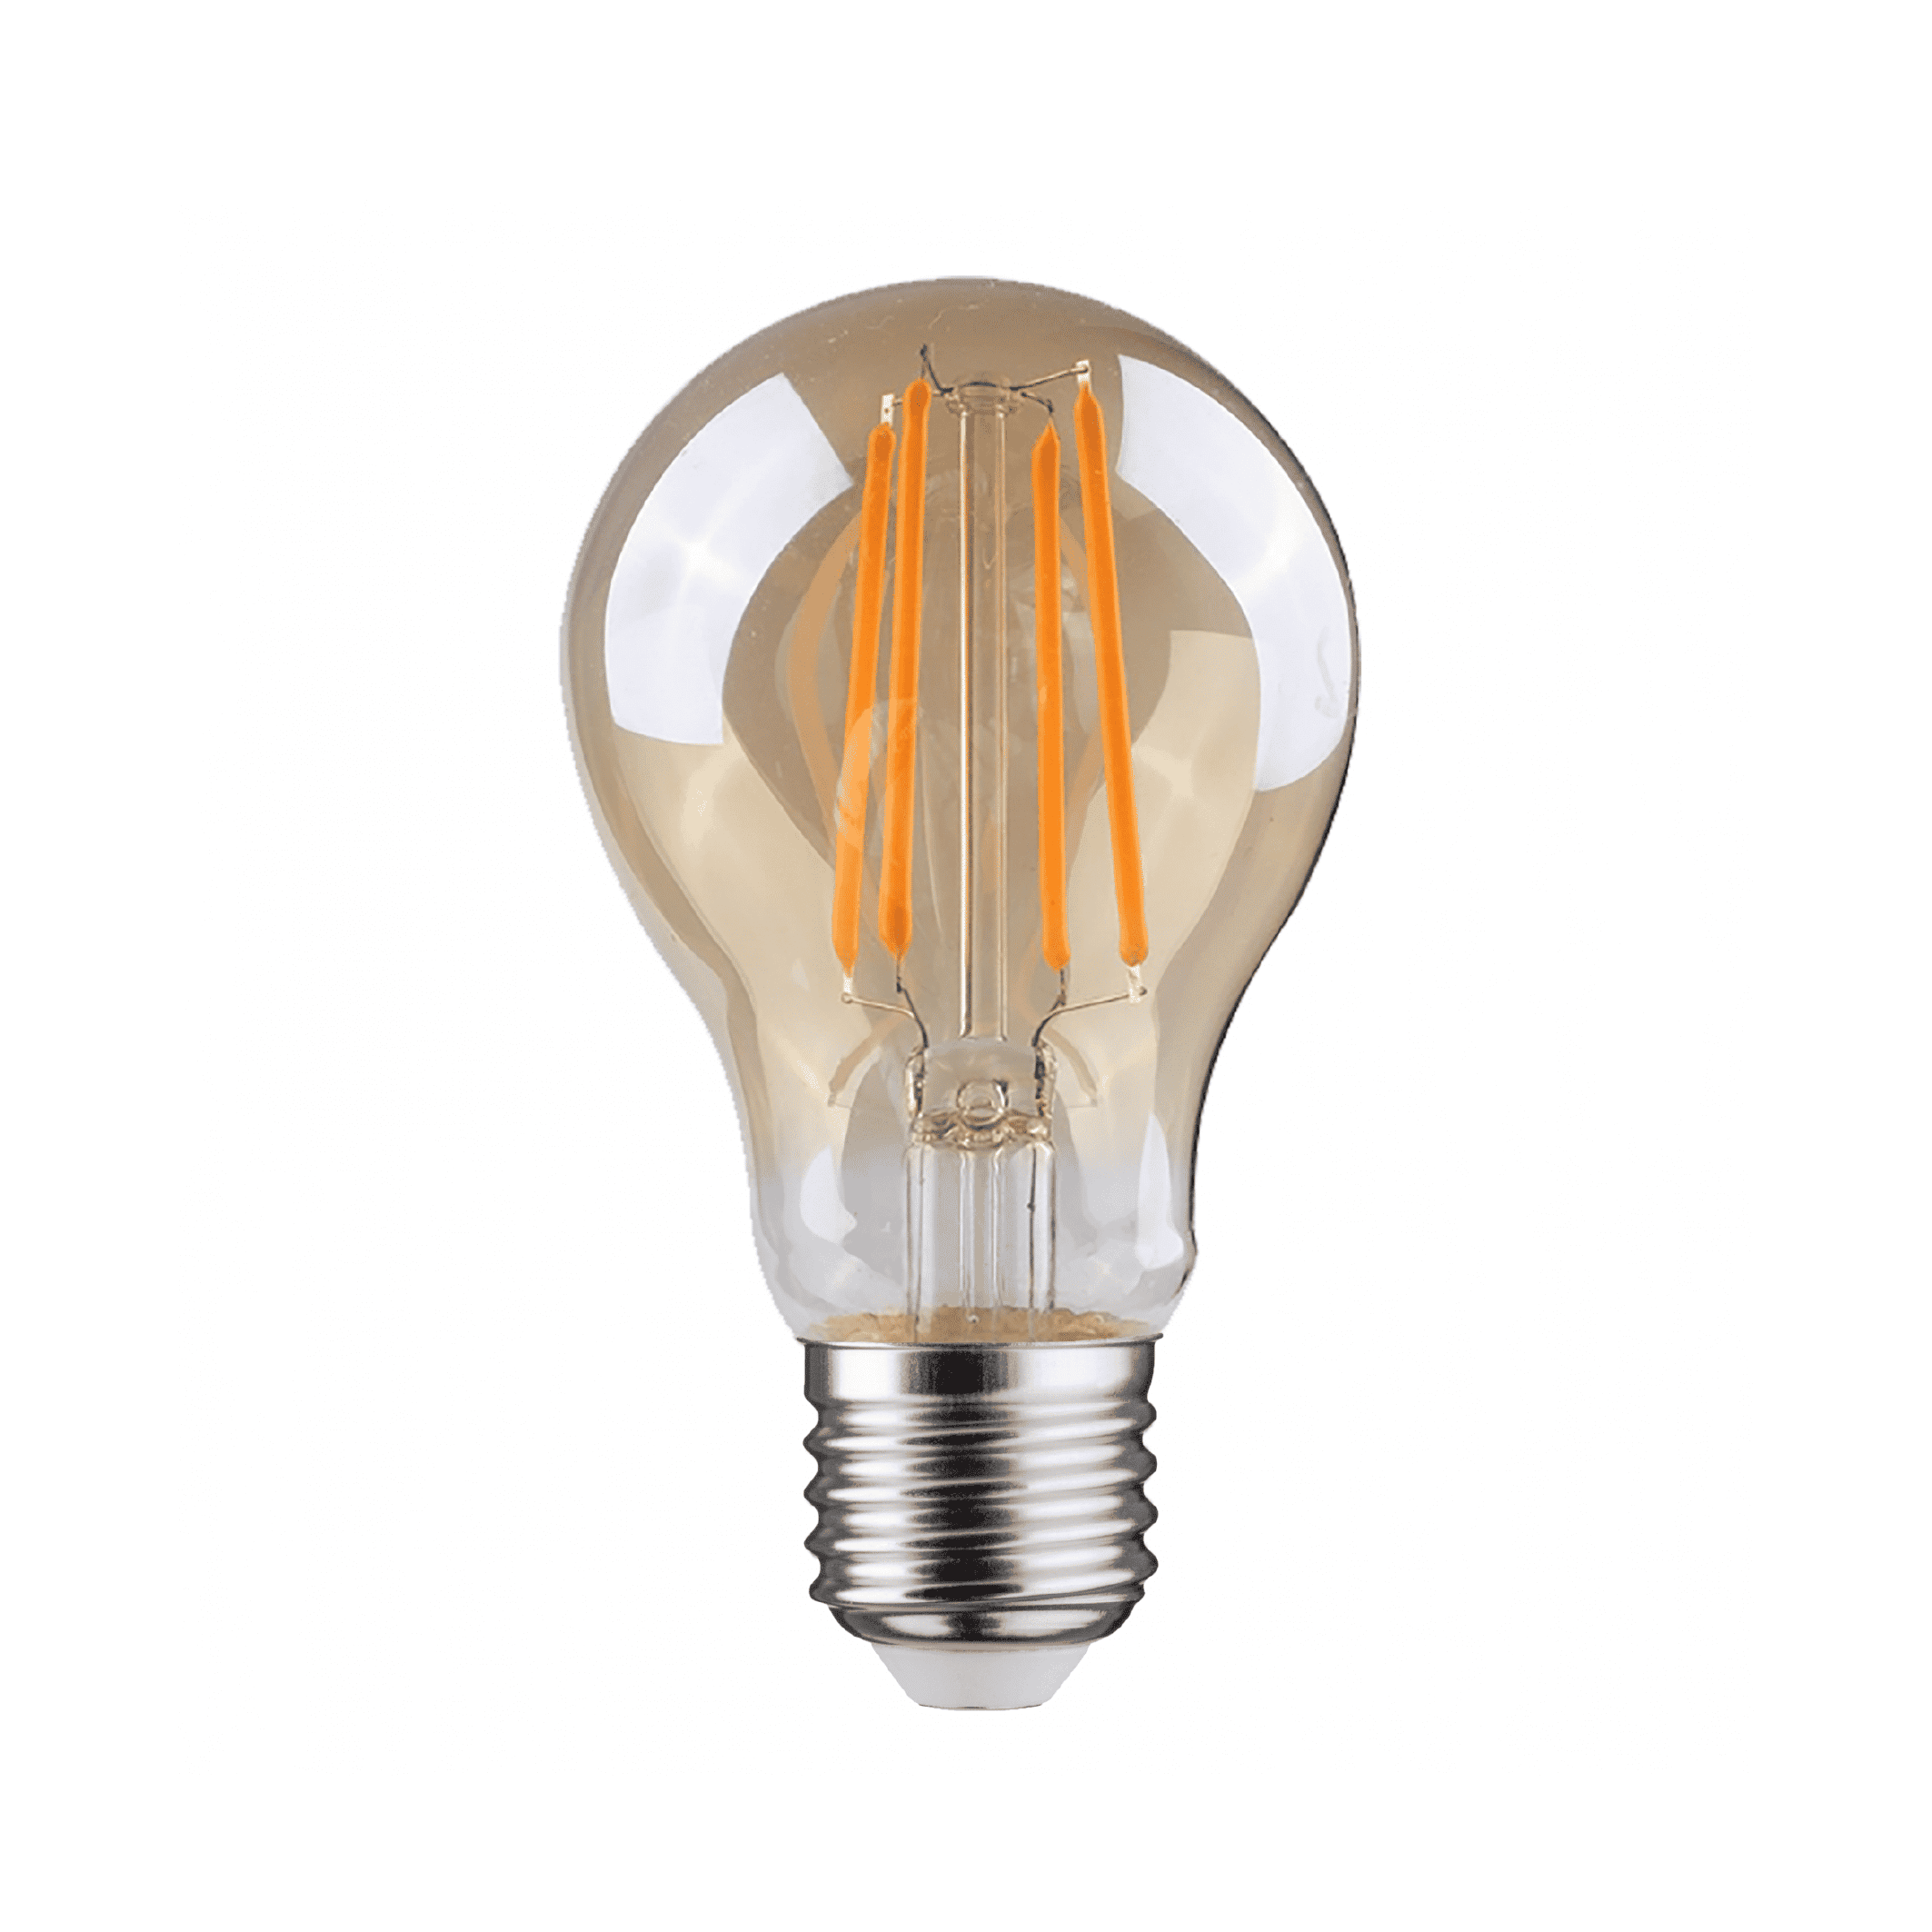 Ongewapend Het beste Onregelmatigheden E27 LED lamp kogel amber | 4 Watt | Dimbaar - WilroLighting